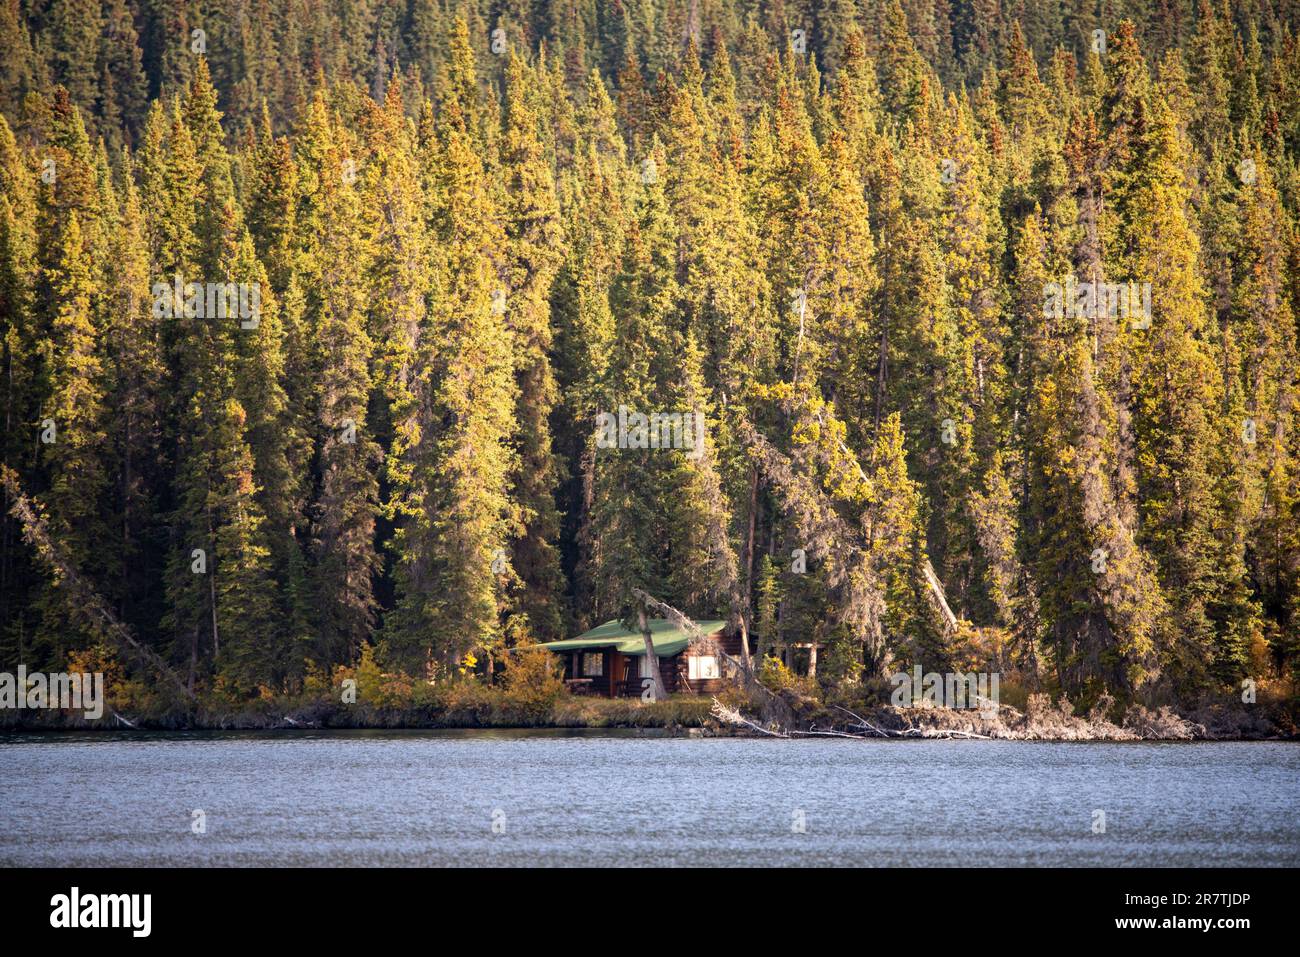 Casetta di tronchi abbandonata nella caduta selvaggia, boschi colorati d'autunno del territorio di Yukon, Canada settentrionale con corsa d'oro, vibrazioni dell'era di clondike. Foto Stock